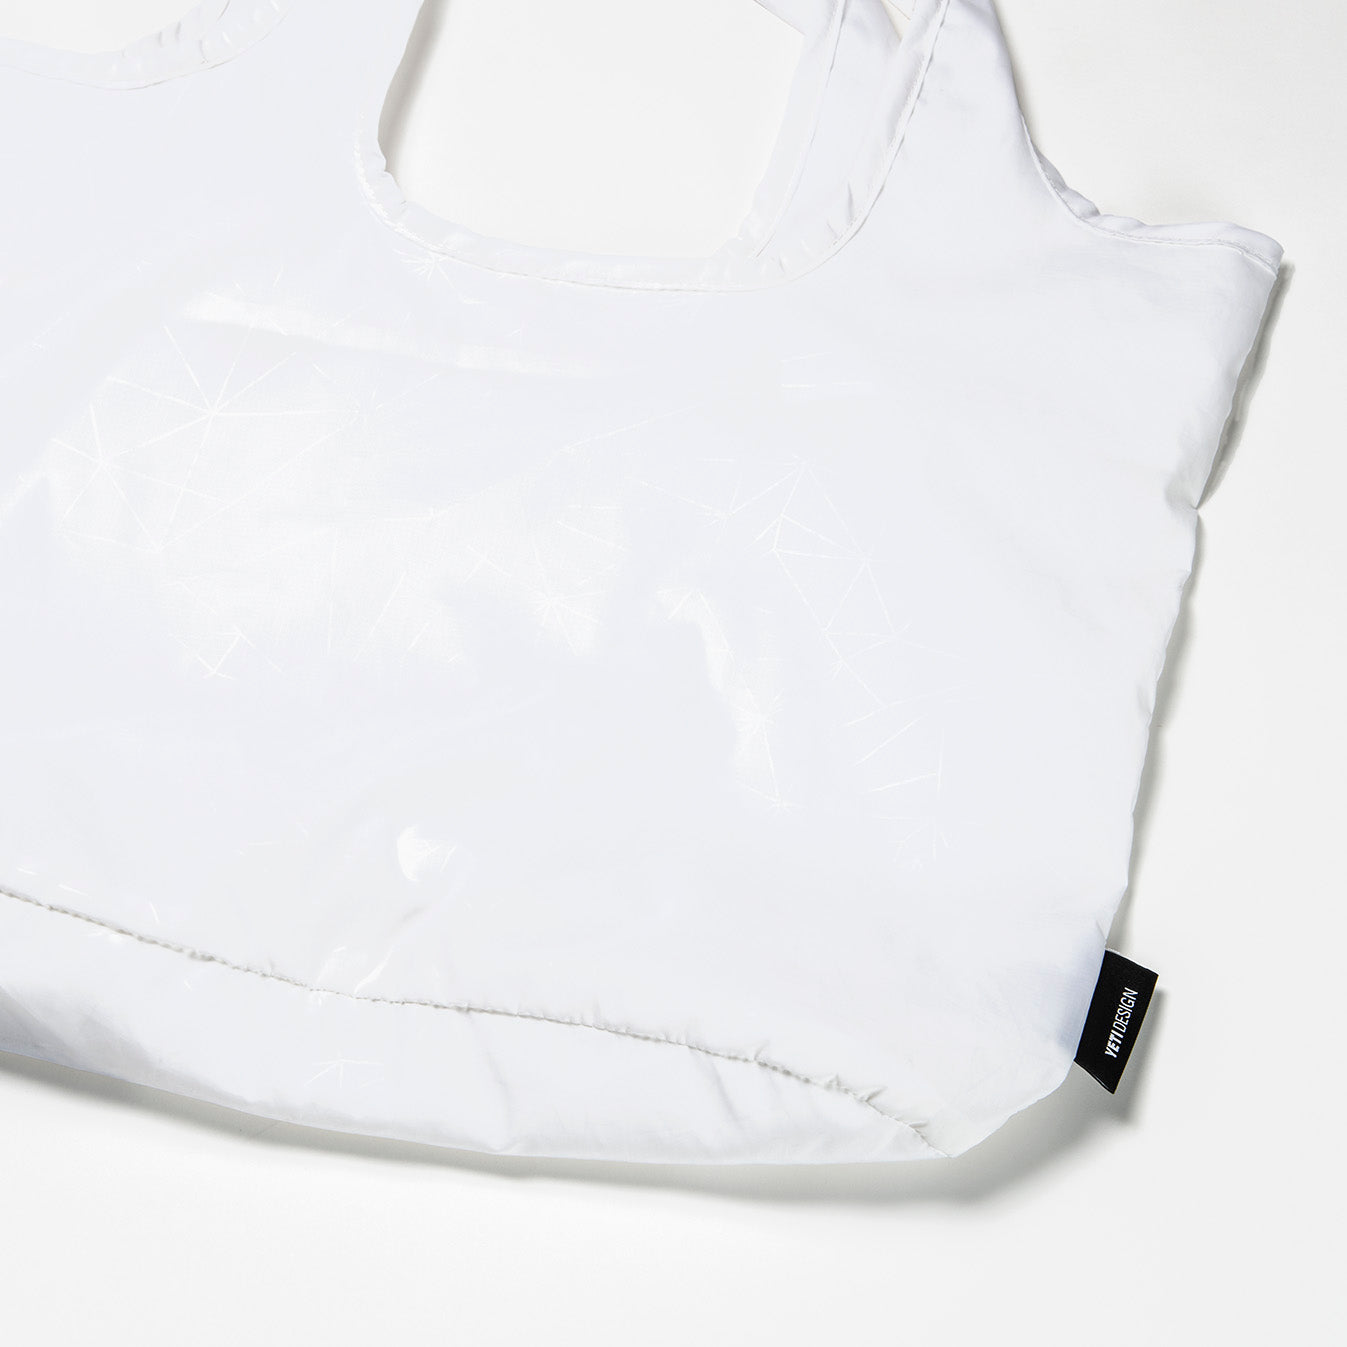 YETI DESIGN(イエティ デザイン) Stuff Tote | スタッフトートバッグ | エコ | 買い物 | 鞄 | 肩掛け | メンズ レディース ユニセックス